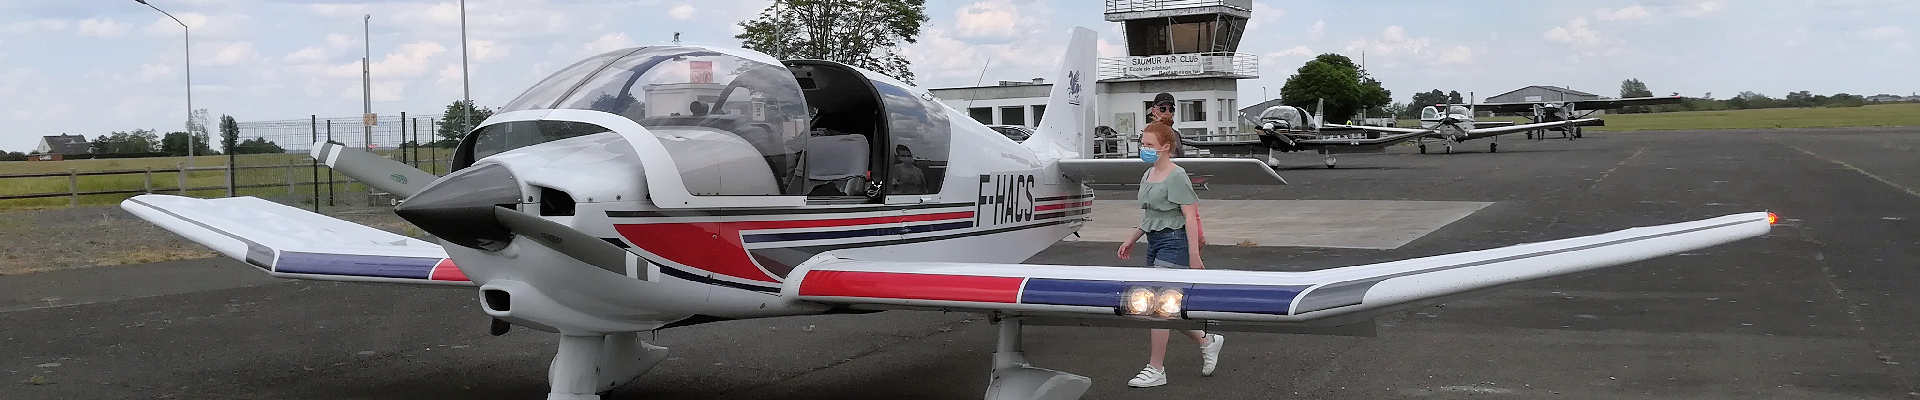 Le DR 400 de Saumur Air Club à LFOD